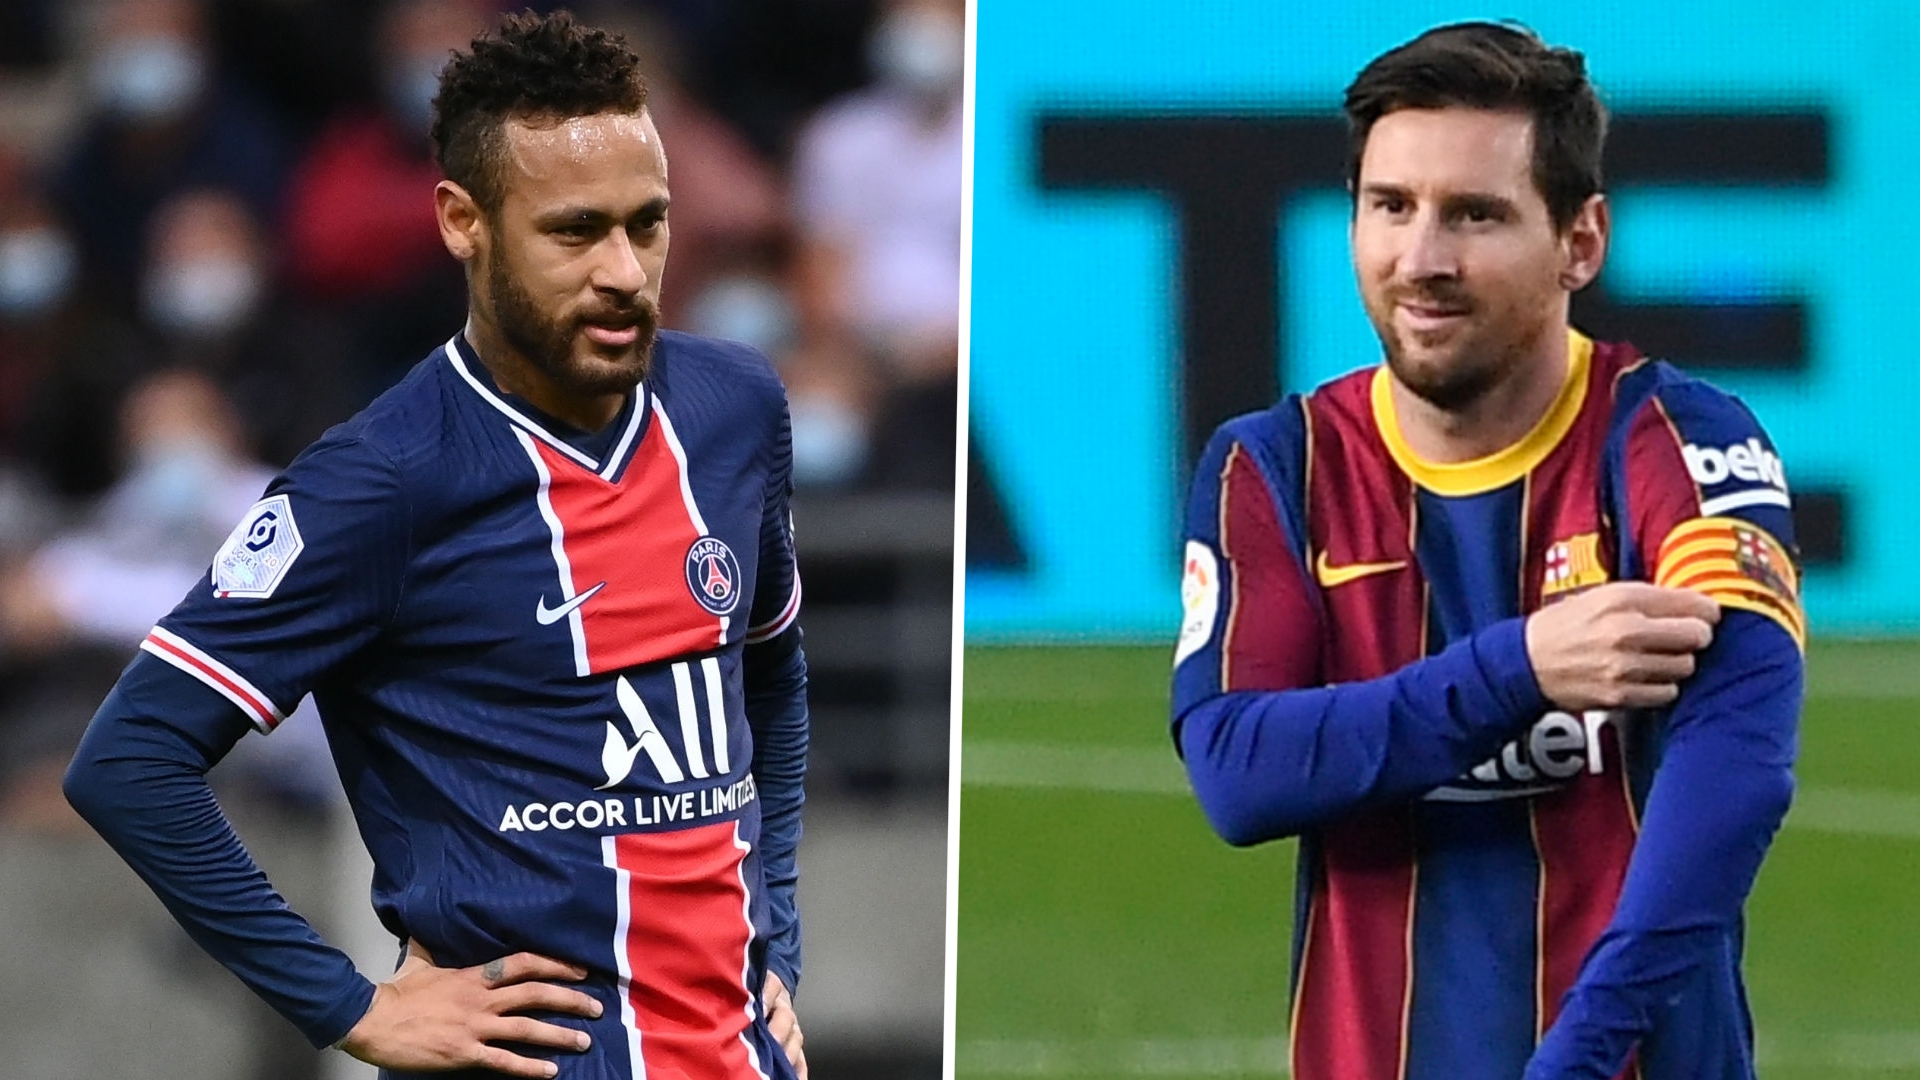 Mercato - Neymar et Messi à nouveau réunis ? Ce serait 